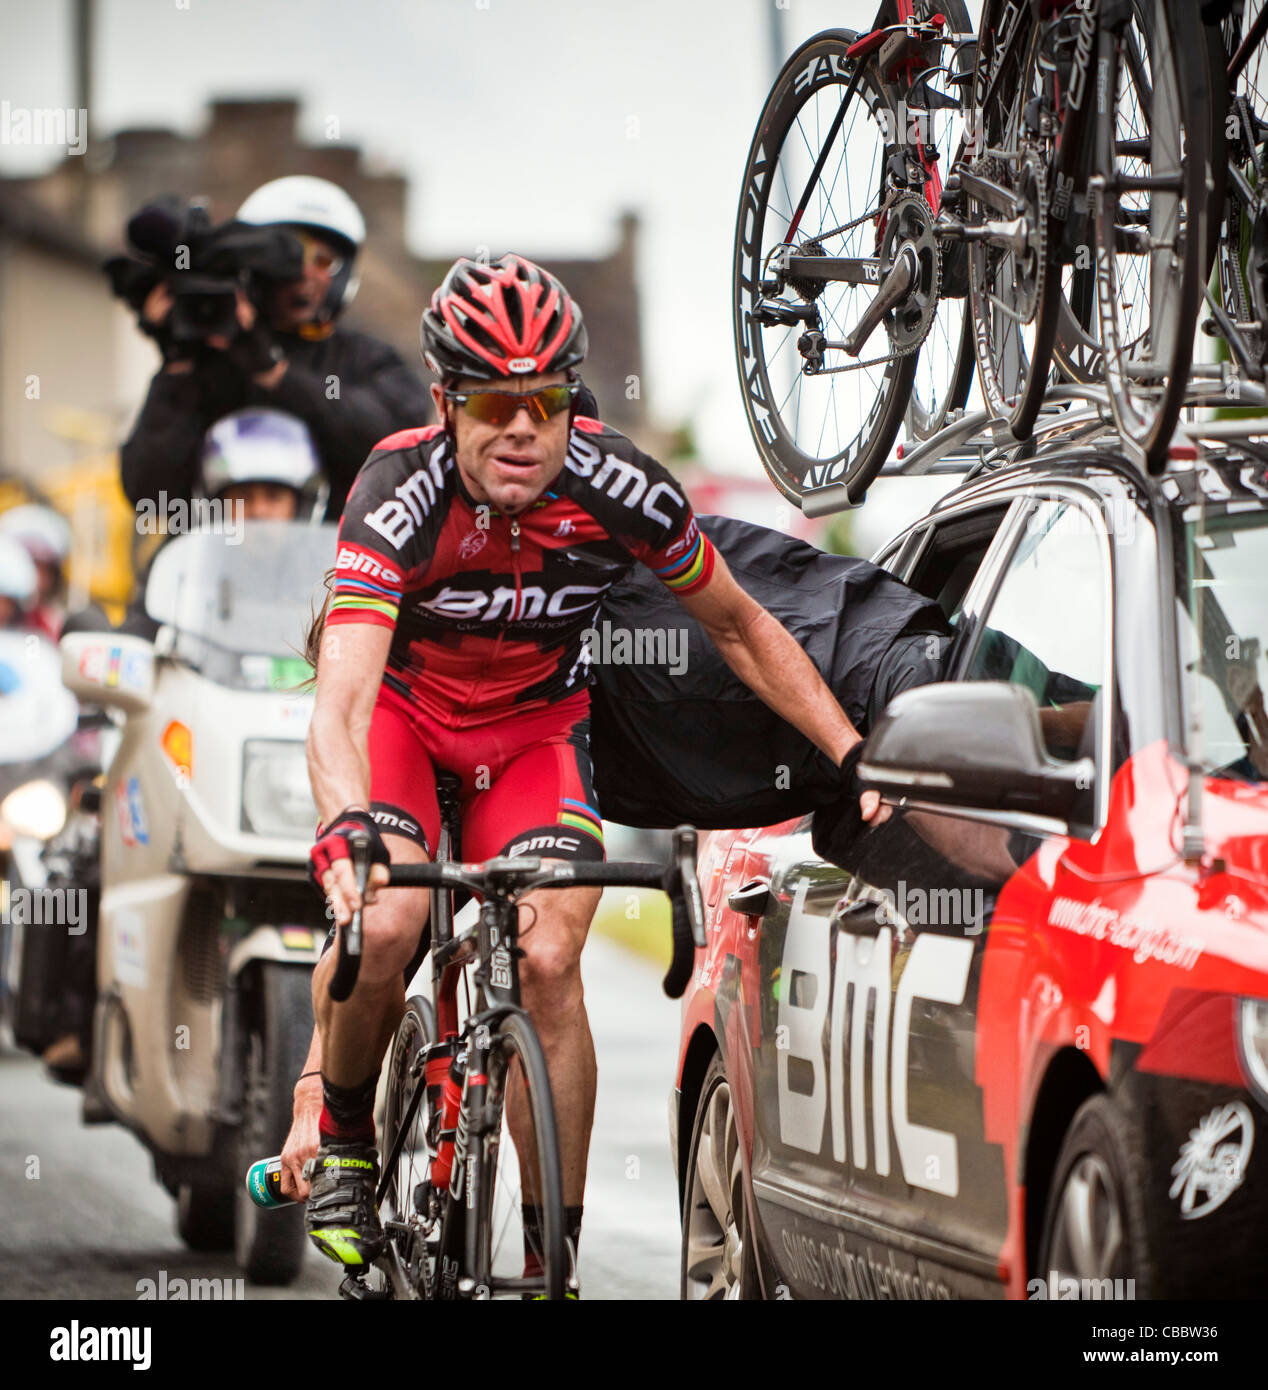 Voiture-huilage chaîne de Cadel Evans dans le Tour de France 2011 Banque D'Images